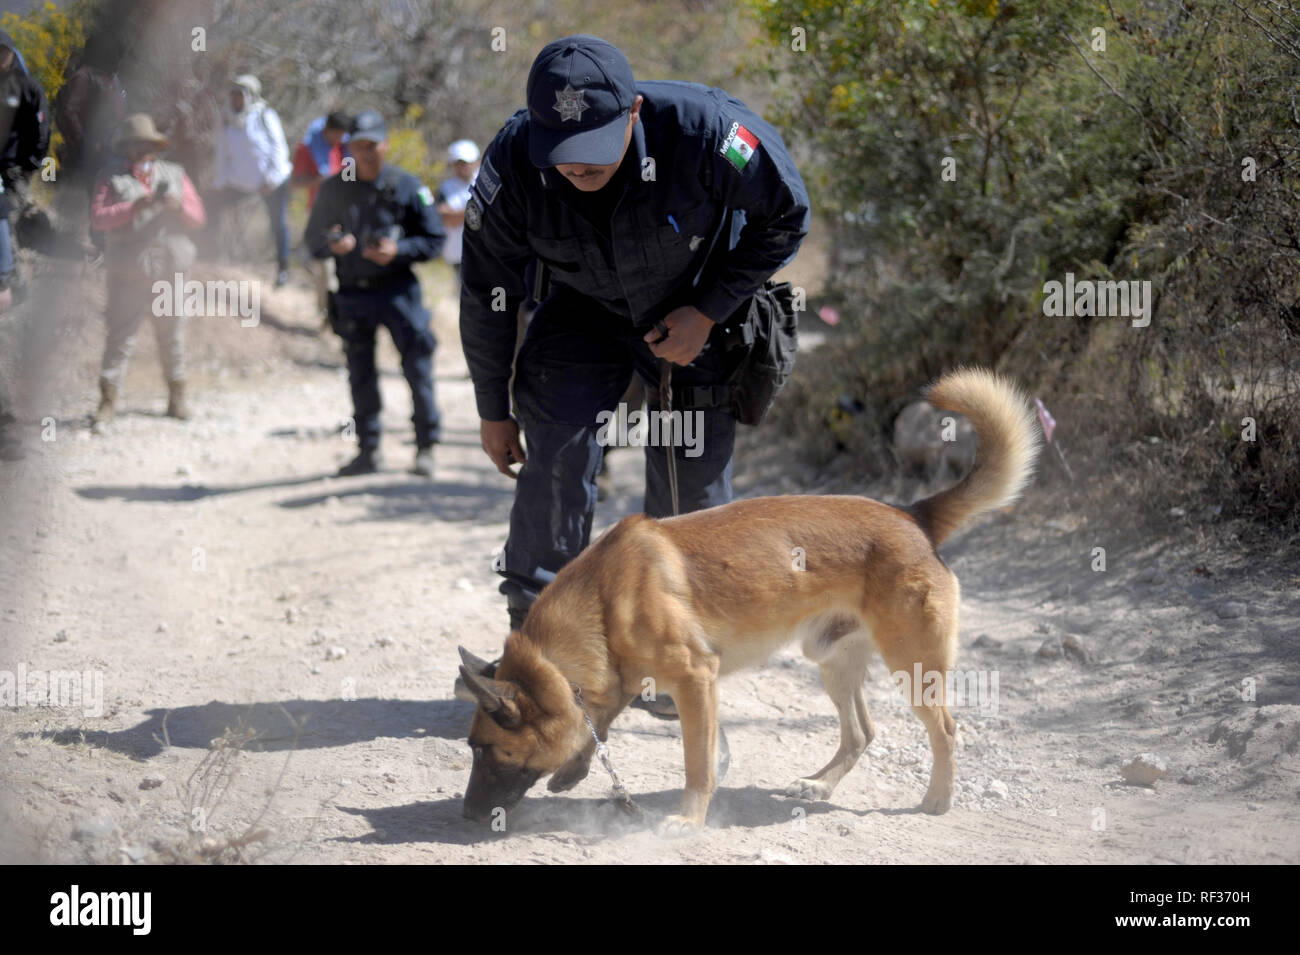 23 de enero de 2019, México, Huitzuco: un perro rastreador de la policía  ayuda en la búsqueda de tumbas ocultas. Más de 40.000 personas están  desaparecidas en México. Un grupo de parientes